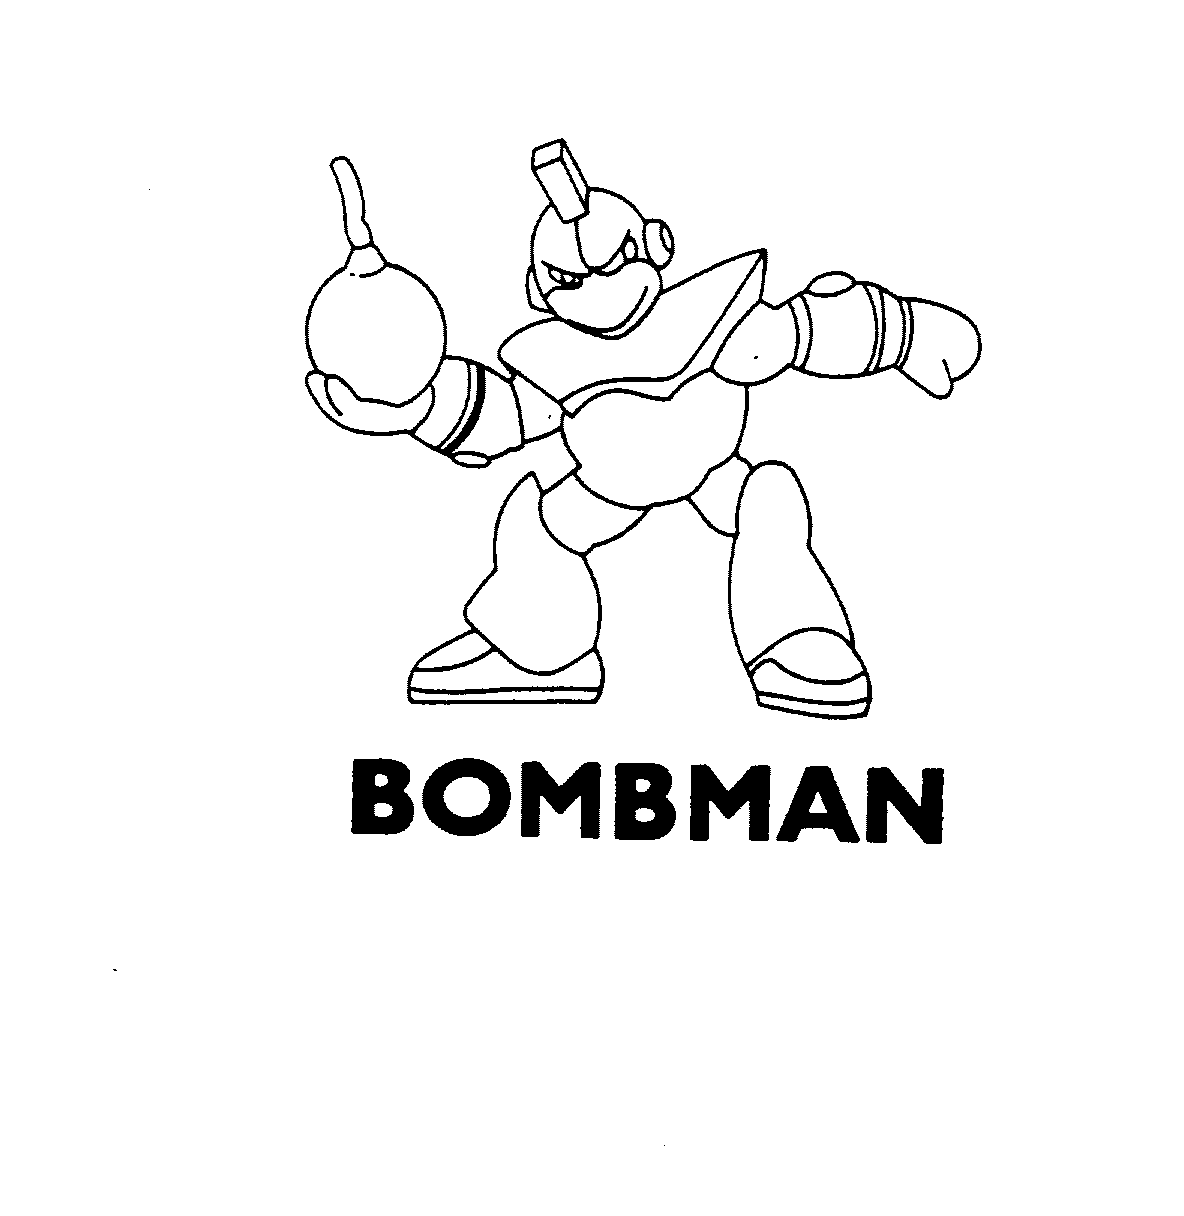  BOMBMAN